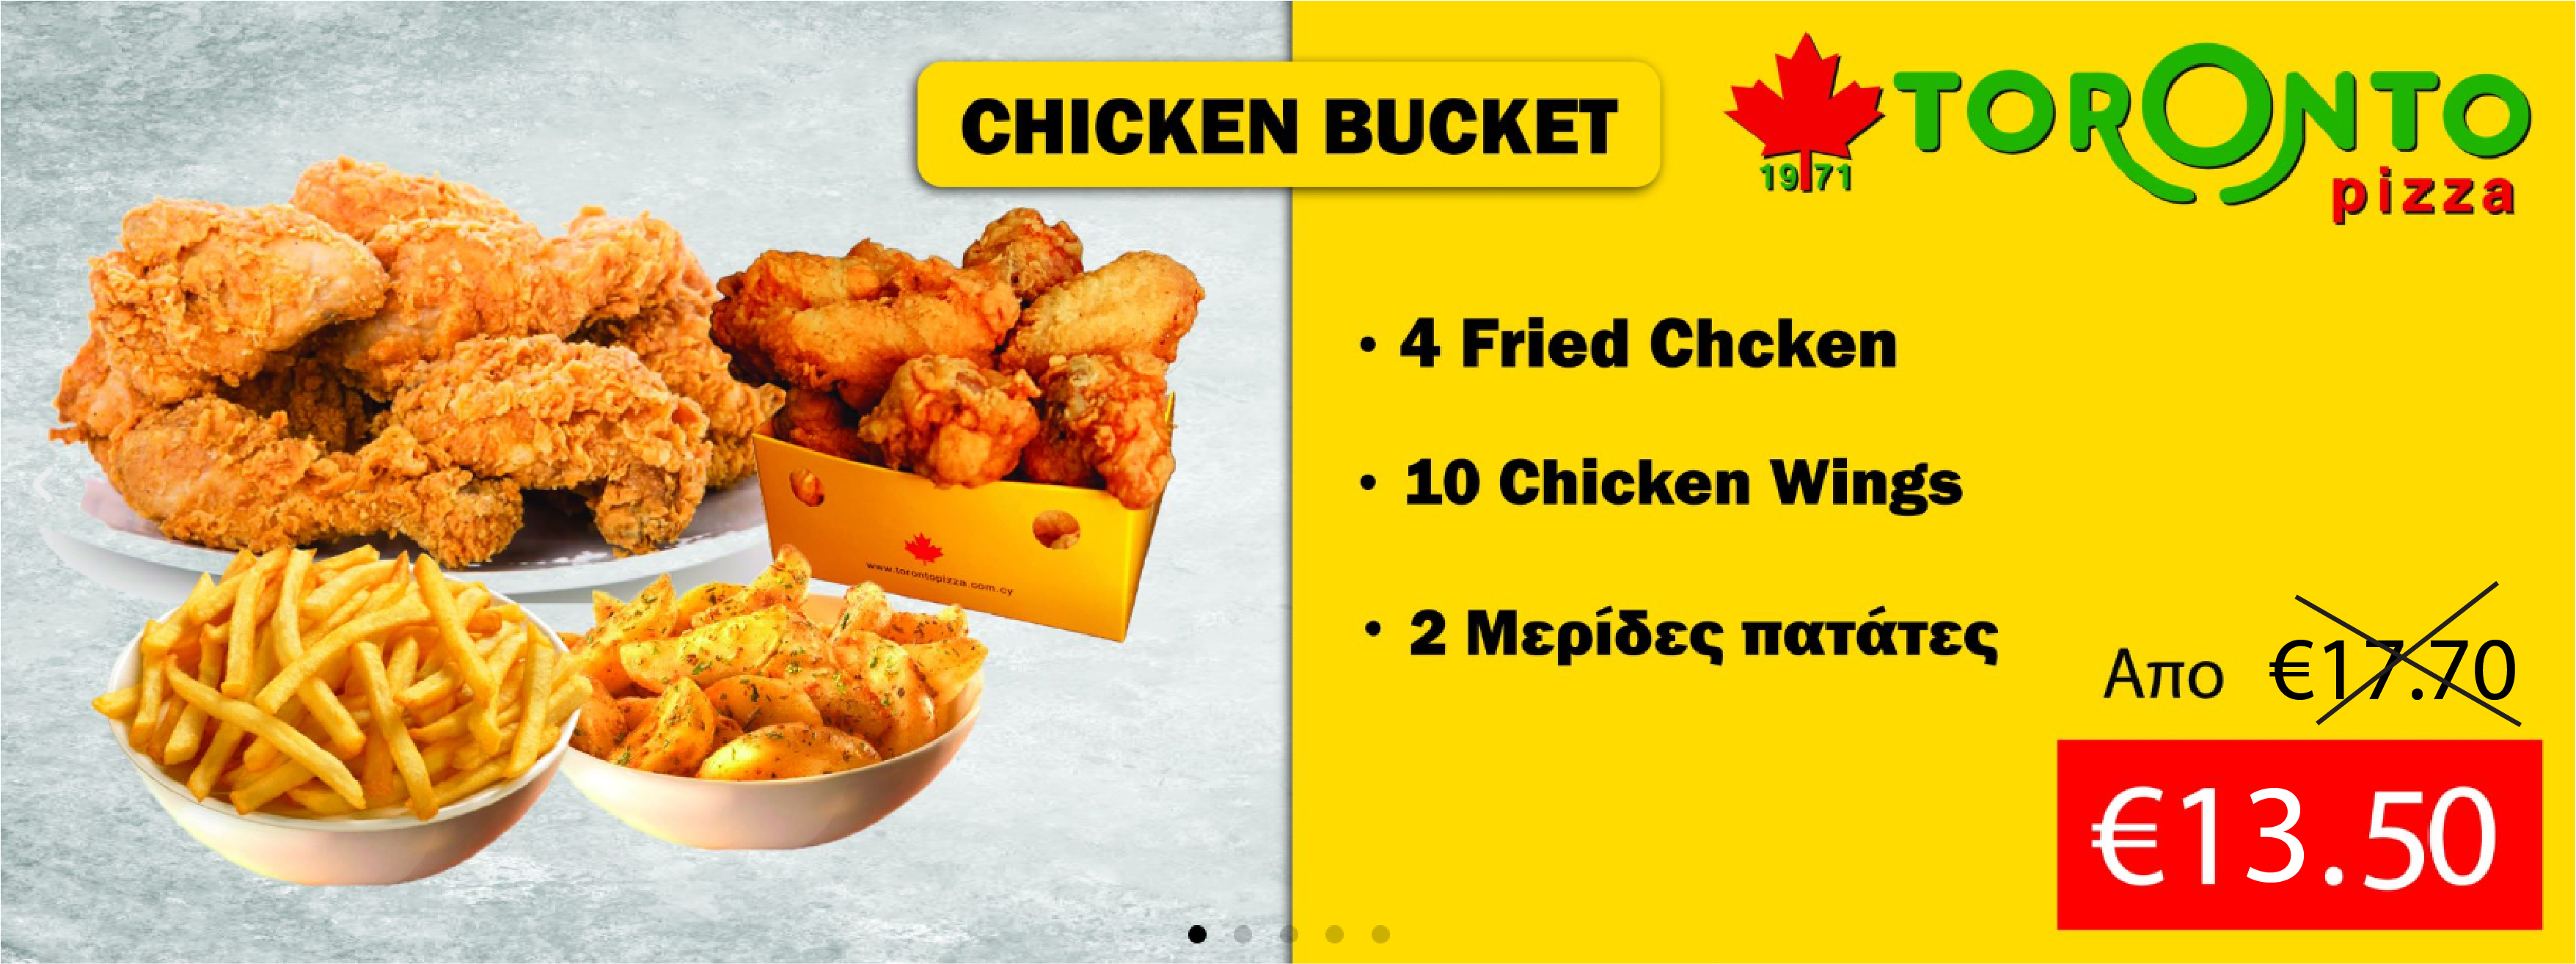 Chicken Bucket Offer